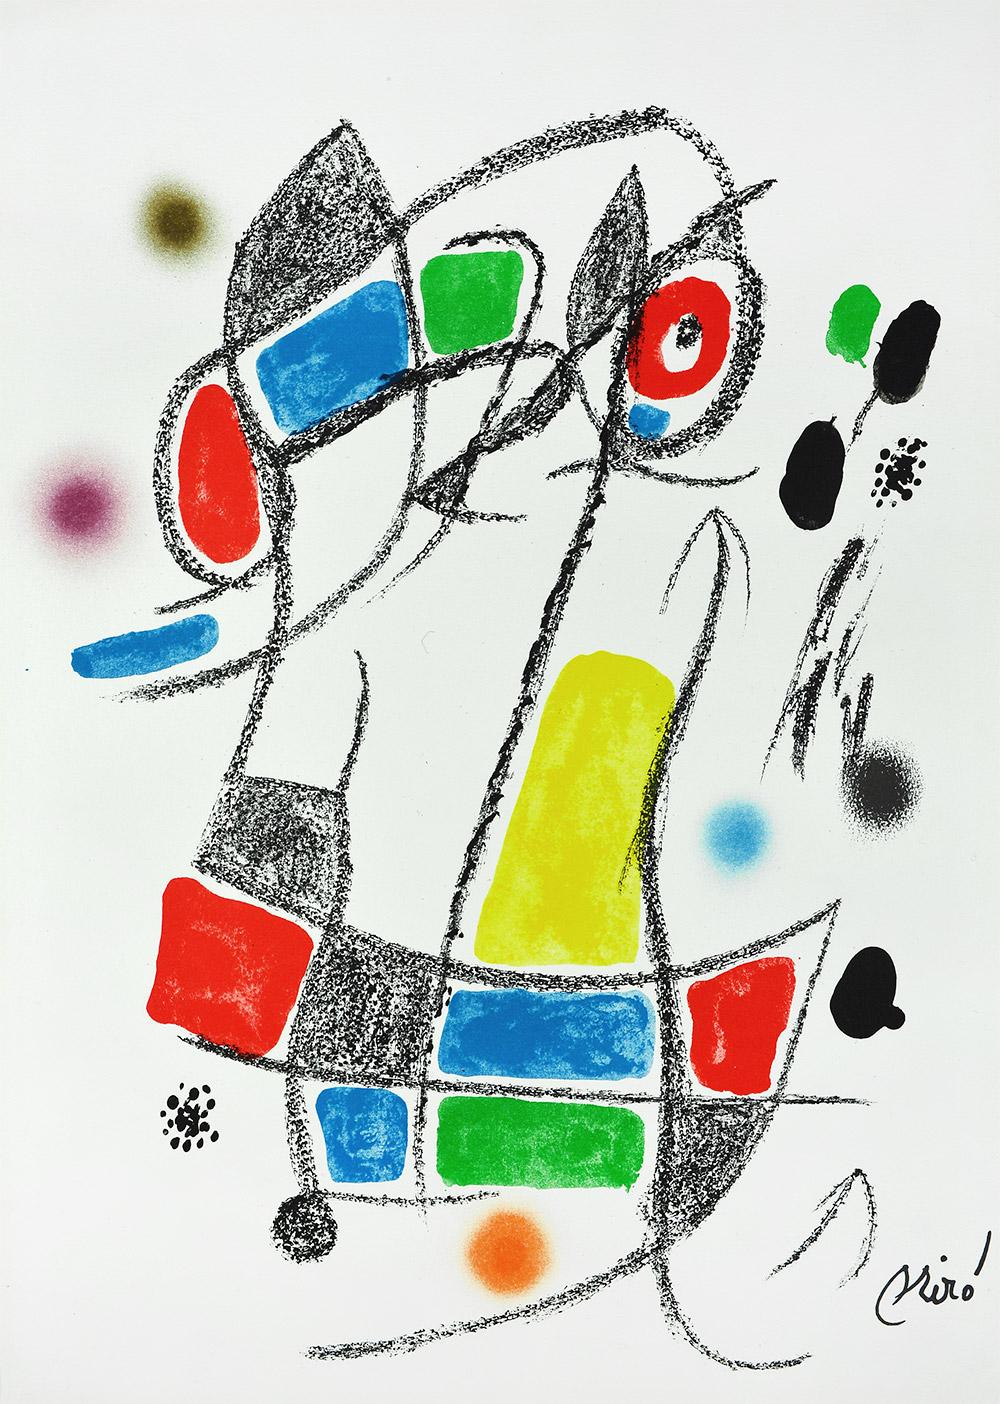 Joan Miró - Maravillas con variaciones acrósticas en el jardín de Miró I
Date de création : 1975
Médium : Lithographie
Médias : Papier Gvarro
Édition : 1500
Taille : 49,5 x 35,5 cm
Condit : En très bon état et jamais encadré
Observations :